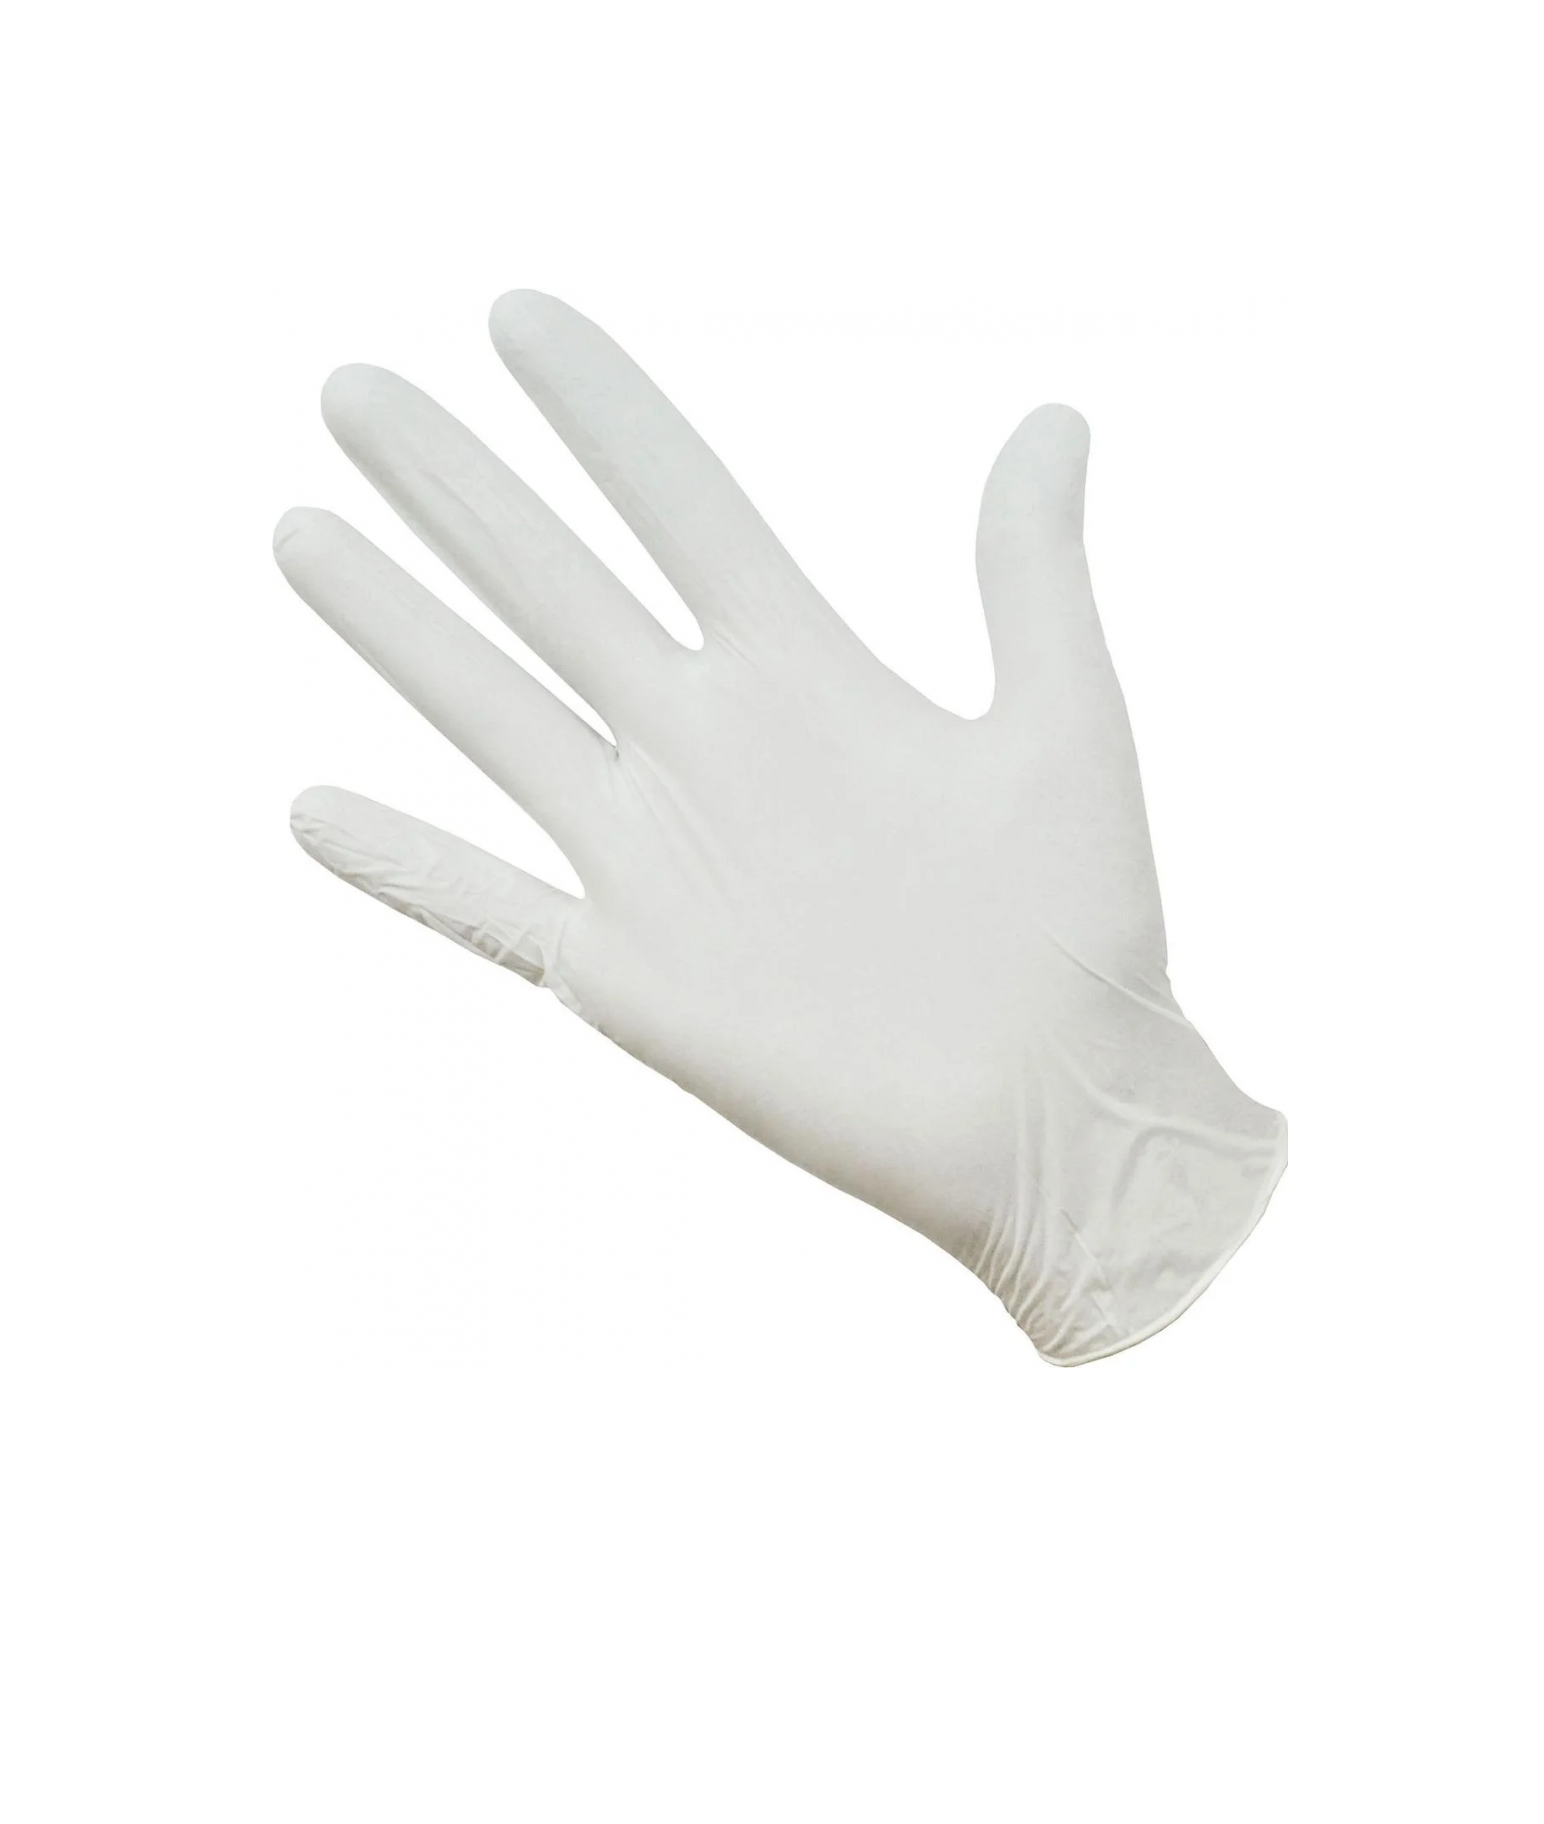 Перчатки Gward,белые, нитриловые, Deltagrip Ultra, LS, размер 7,S, 50пар перчатки gward белые нитриловые deltagrip ultra ls размер 7 s 50пар